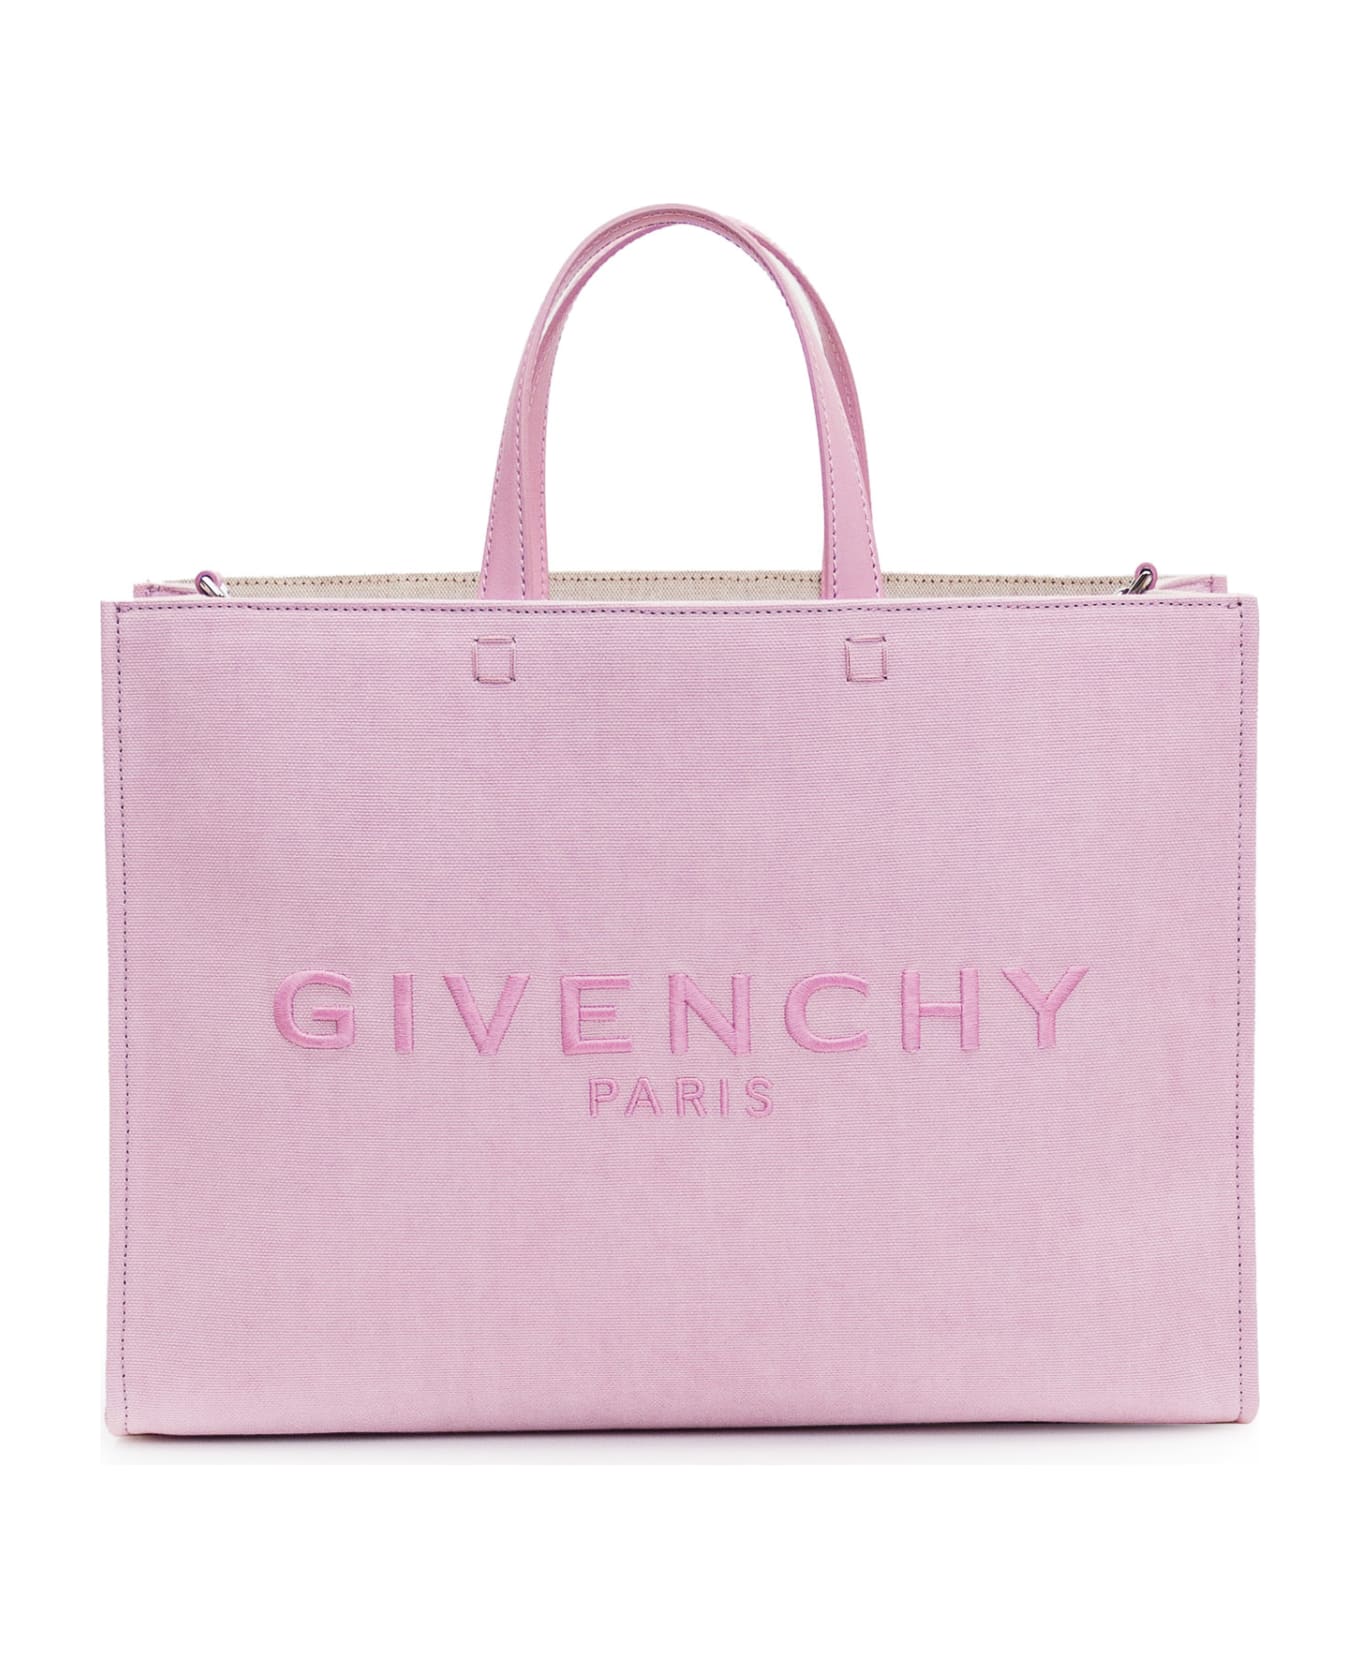 Givenchy G Medium Tote Bag - OLD PINK